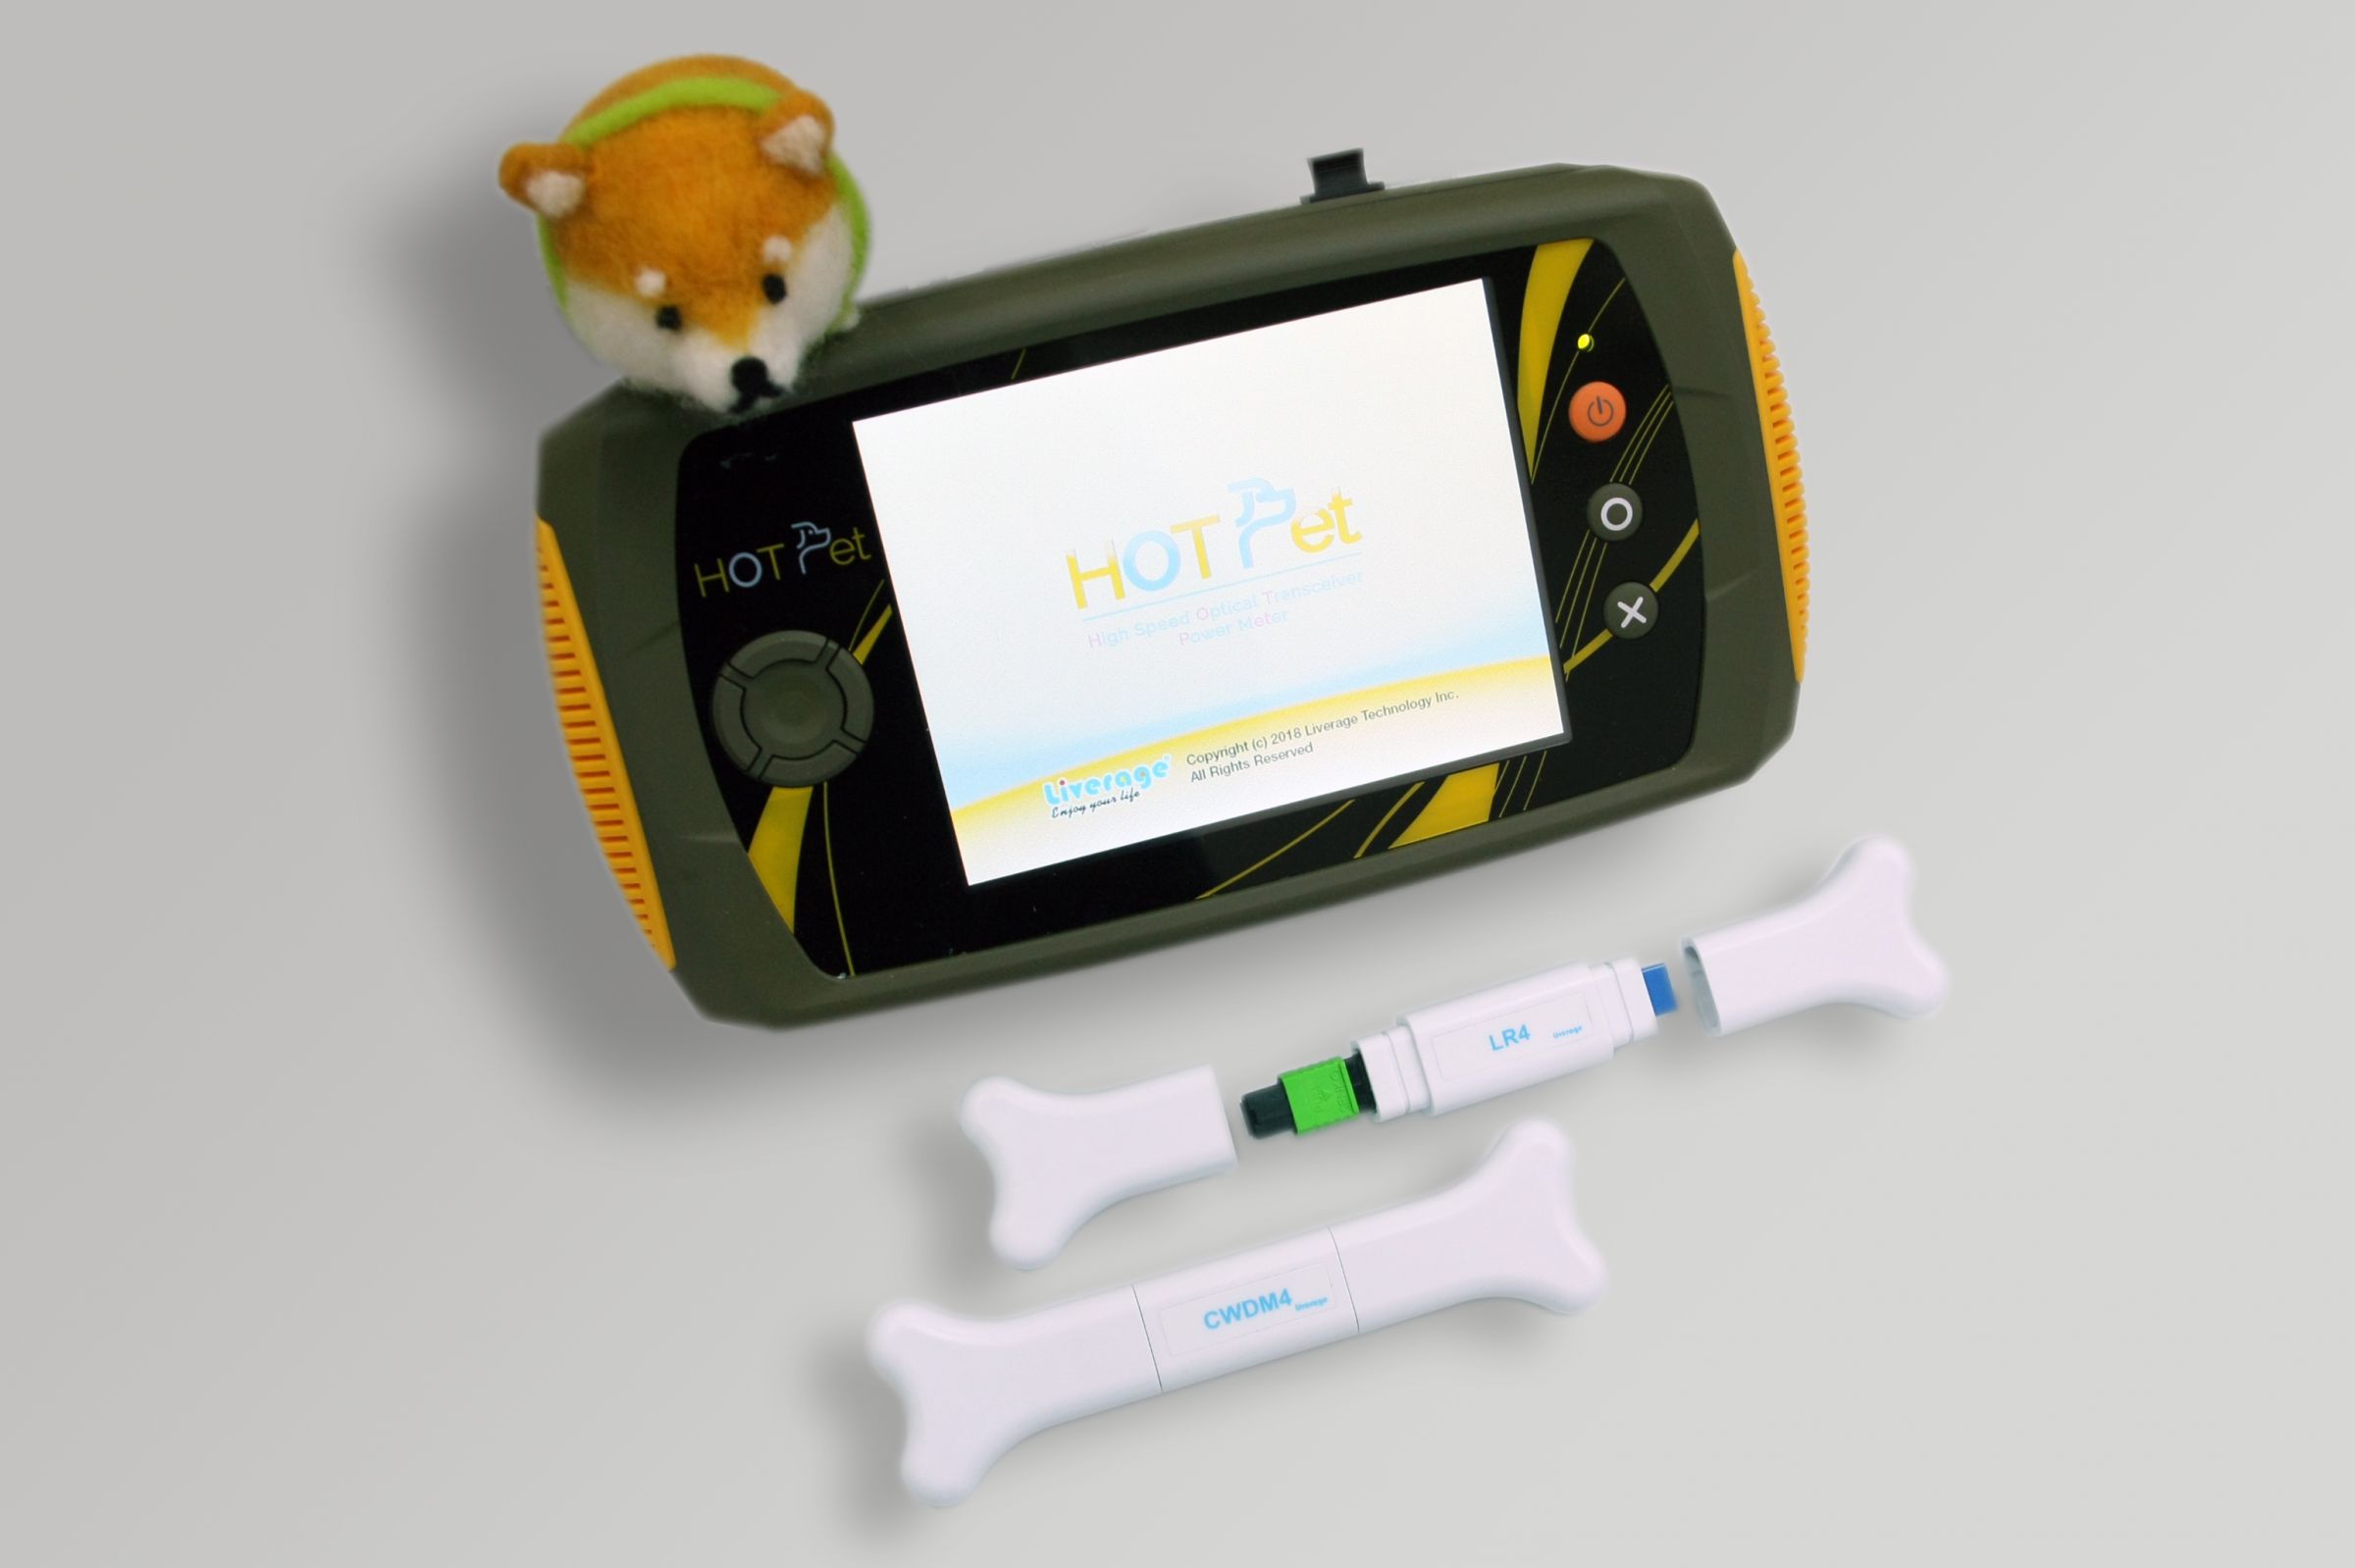 HOT Petは、特に40〜100G光トランシーバーの4チャンネル出力電力を測定します。